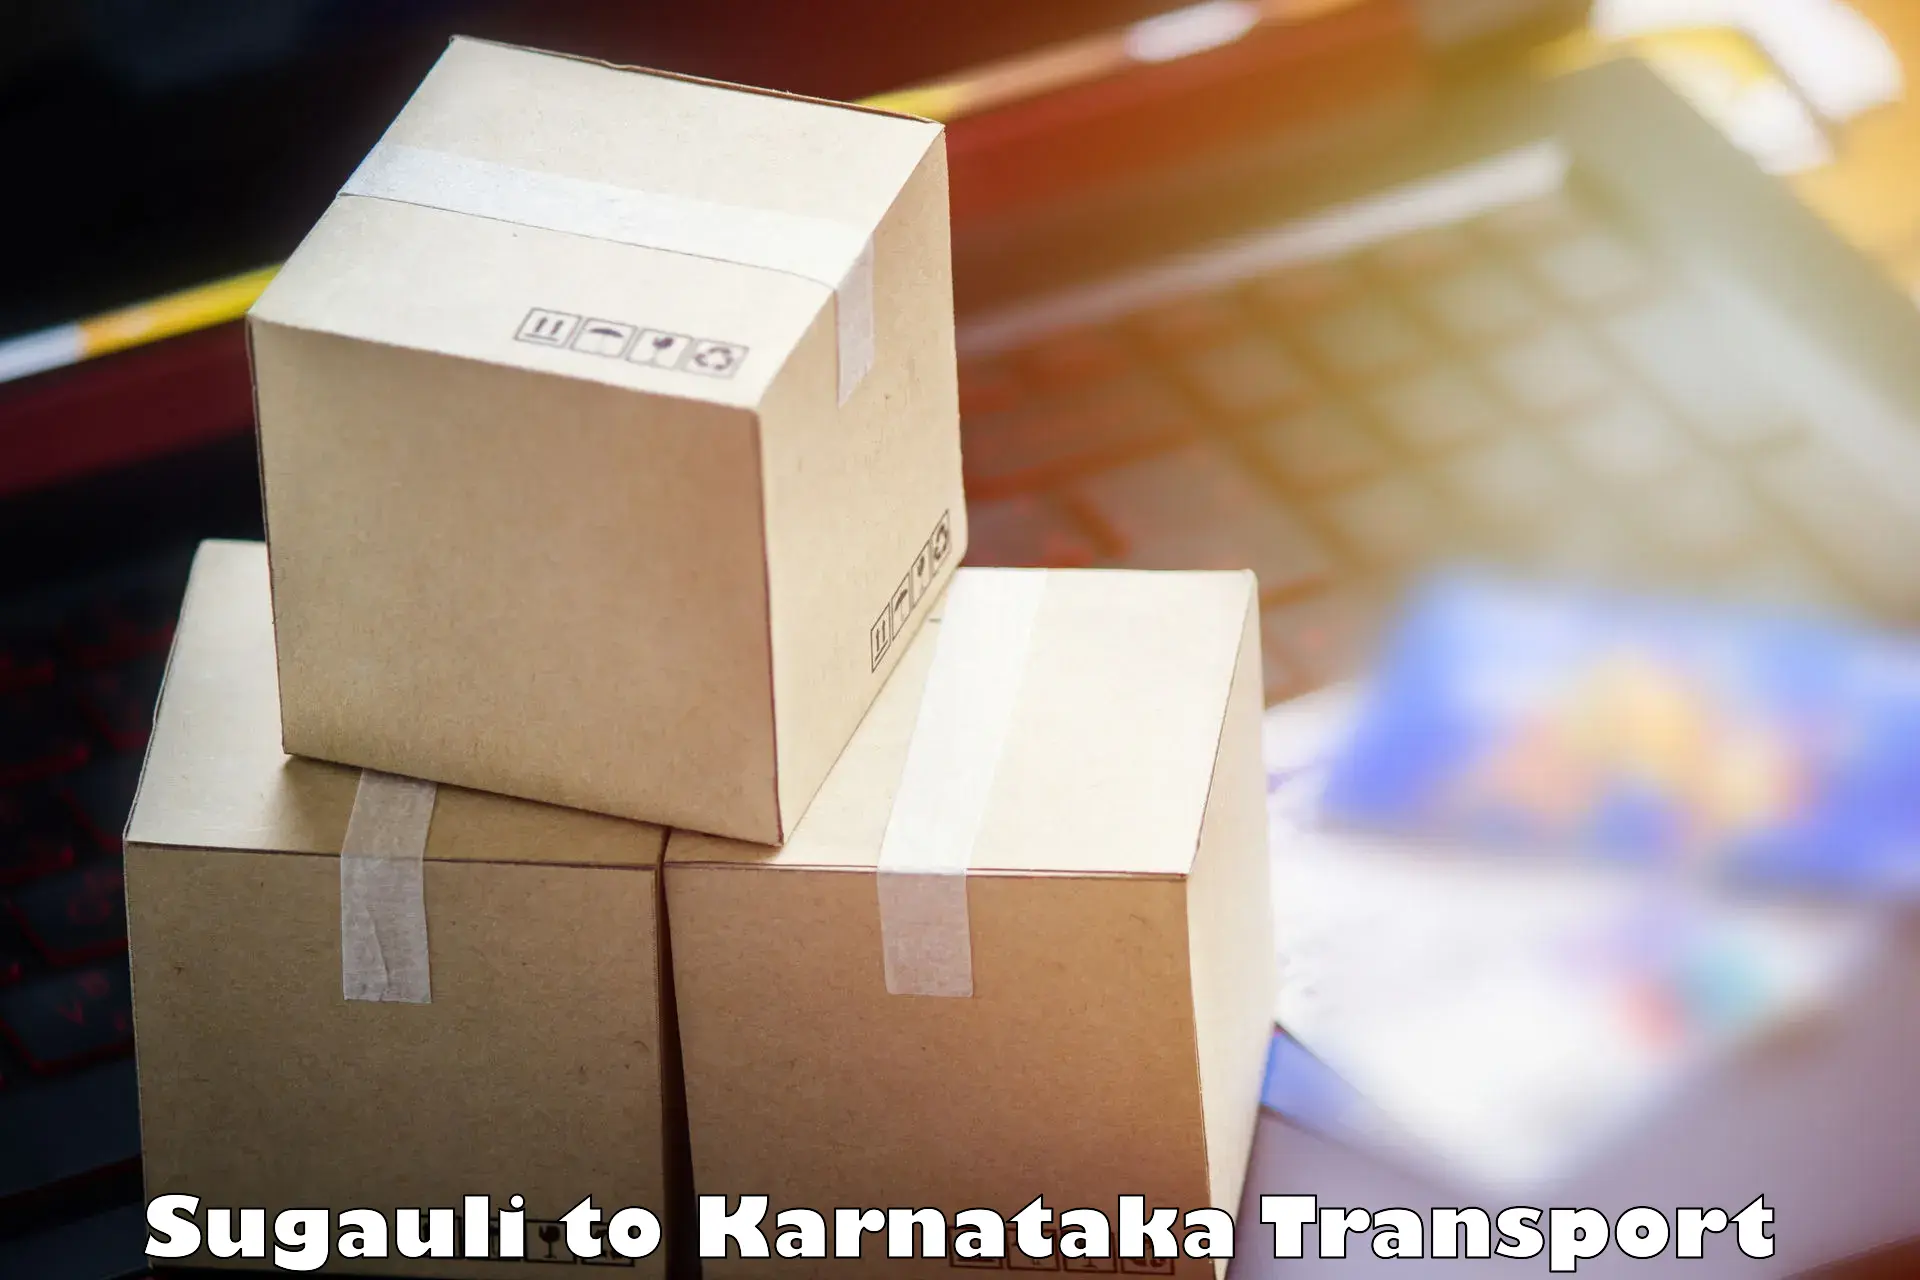 Online transport booking Sugauli to Karnataka